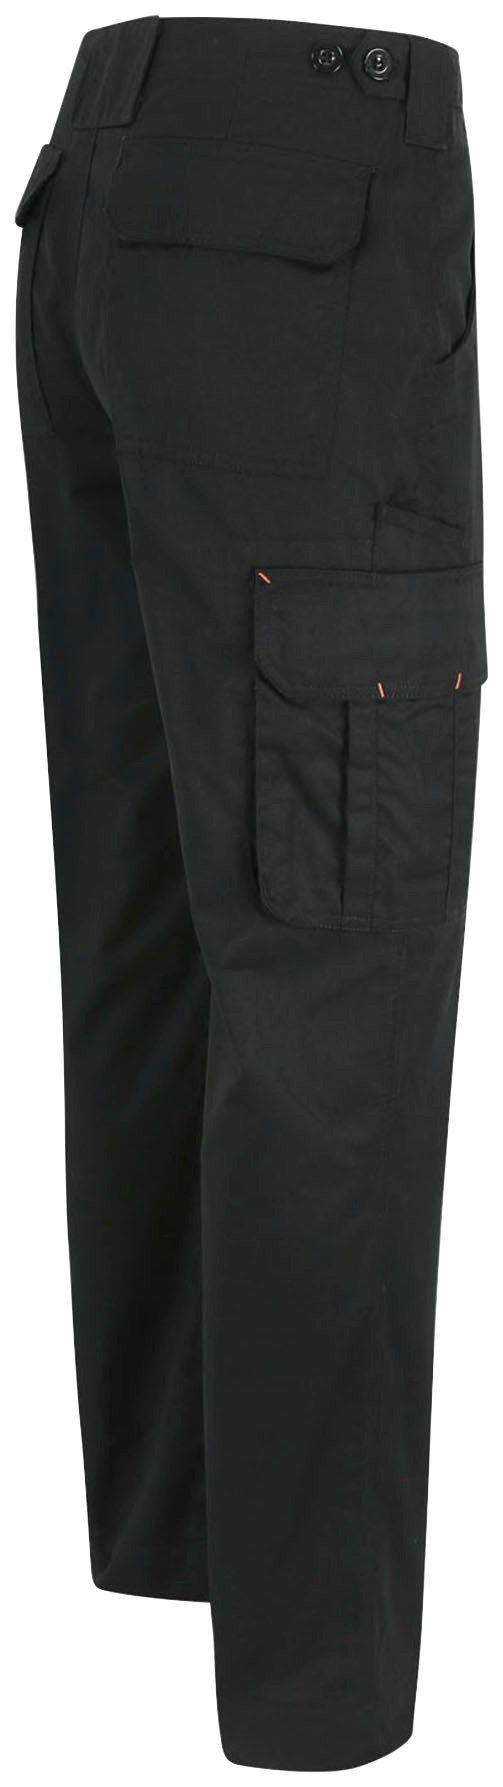 Wasserabweisend, leicht, schwarz Herock viele einstellbarer Bund, 7 Thor Hose Farben Arbeitshose Taschen,